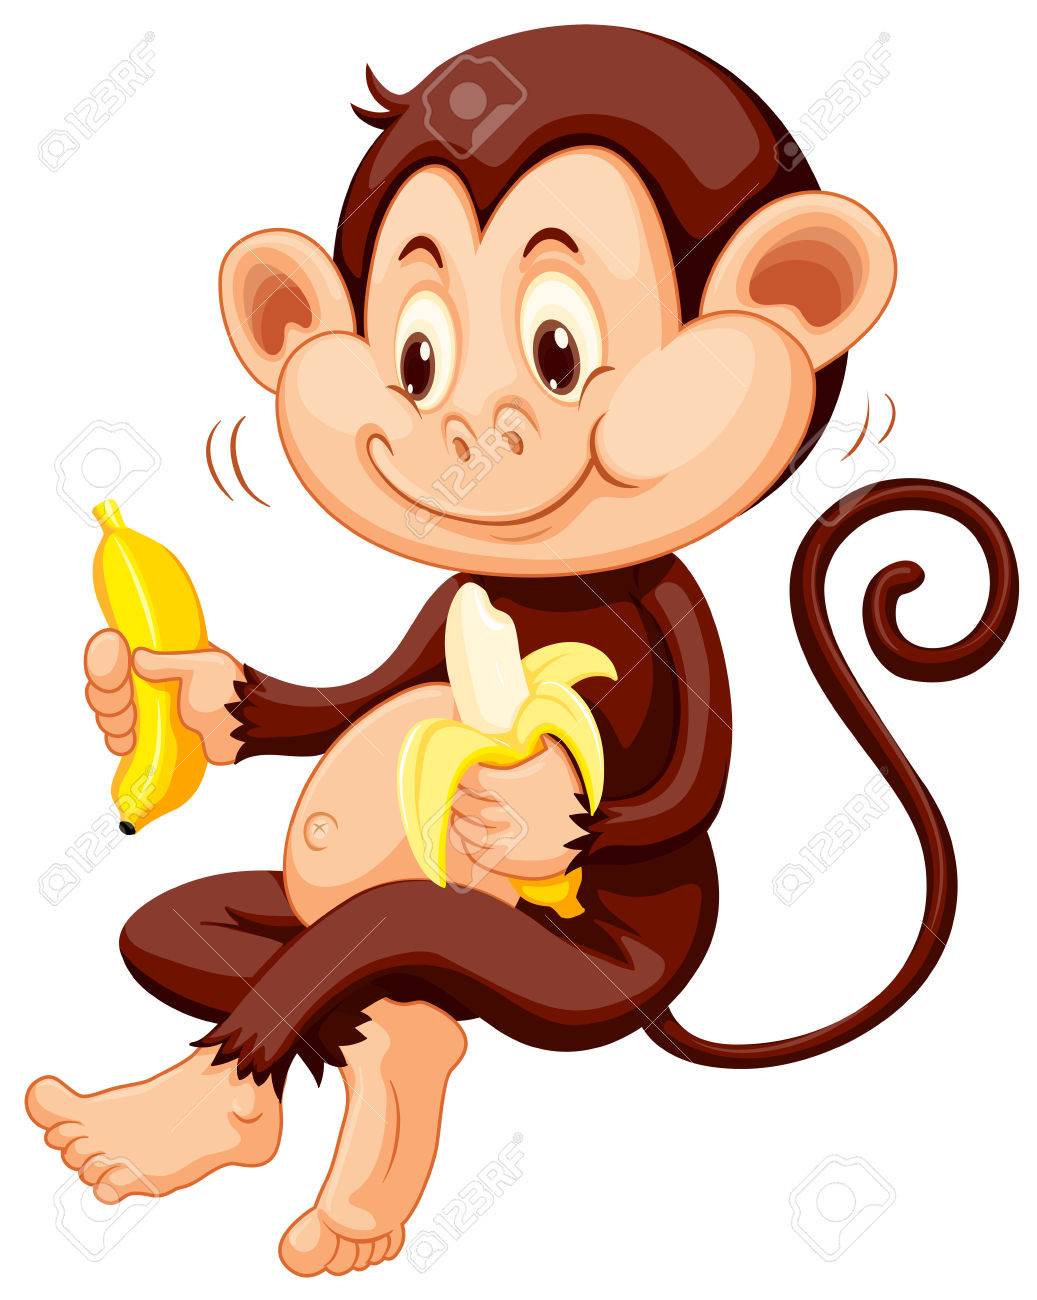 Little monkey eating bananas illustration.